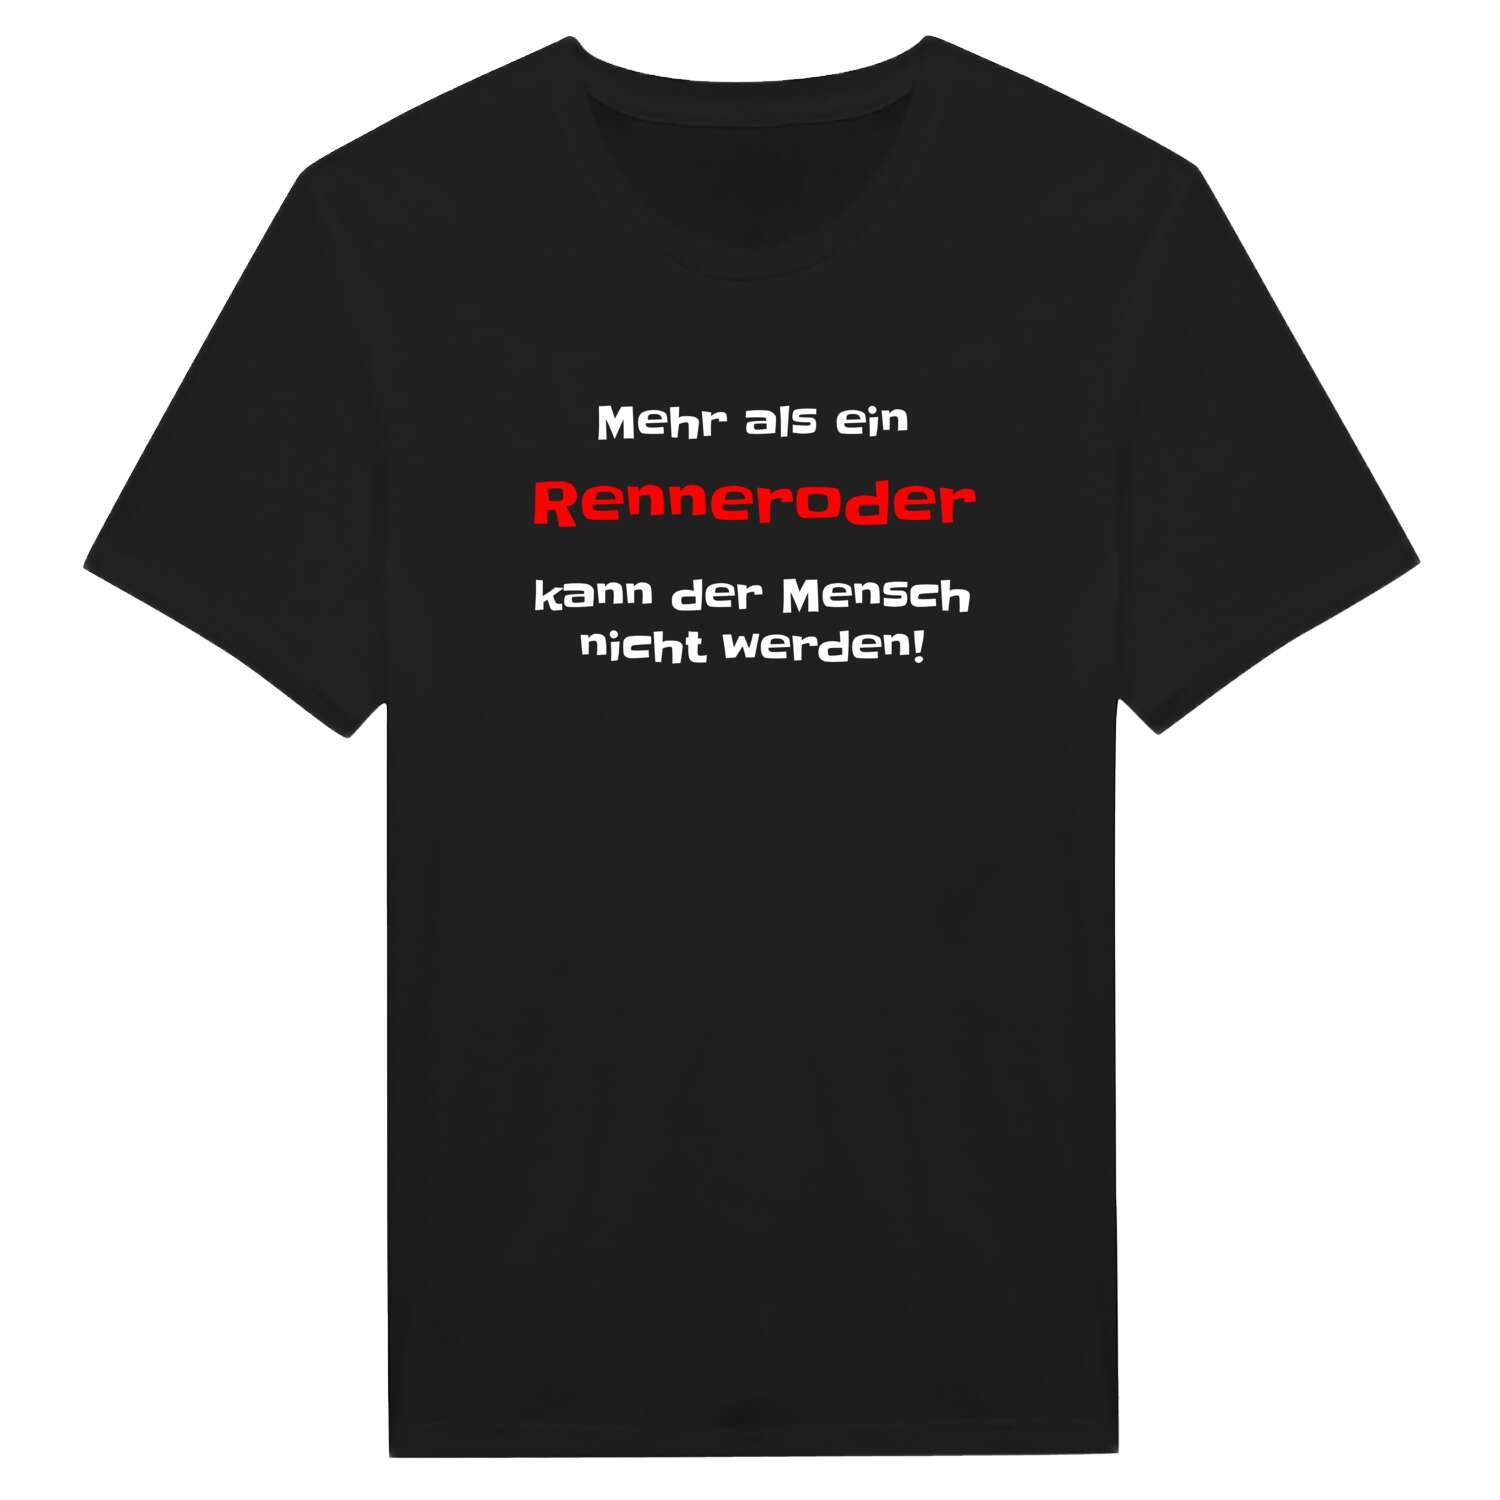 Rennerod T-Shirt »Mehr als ein«